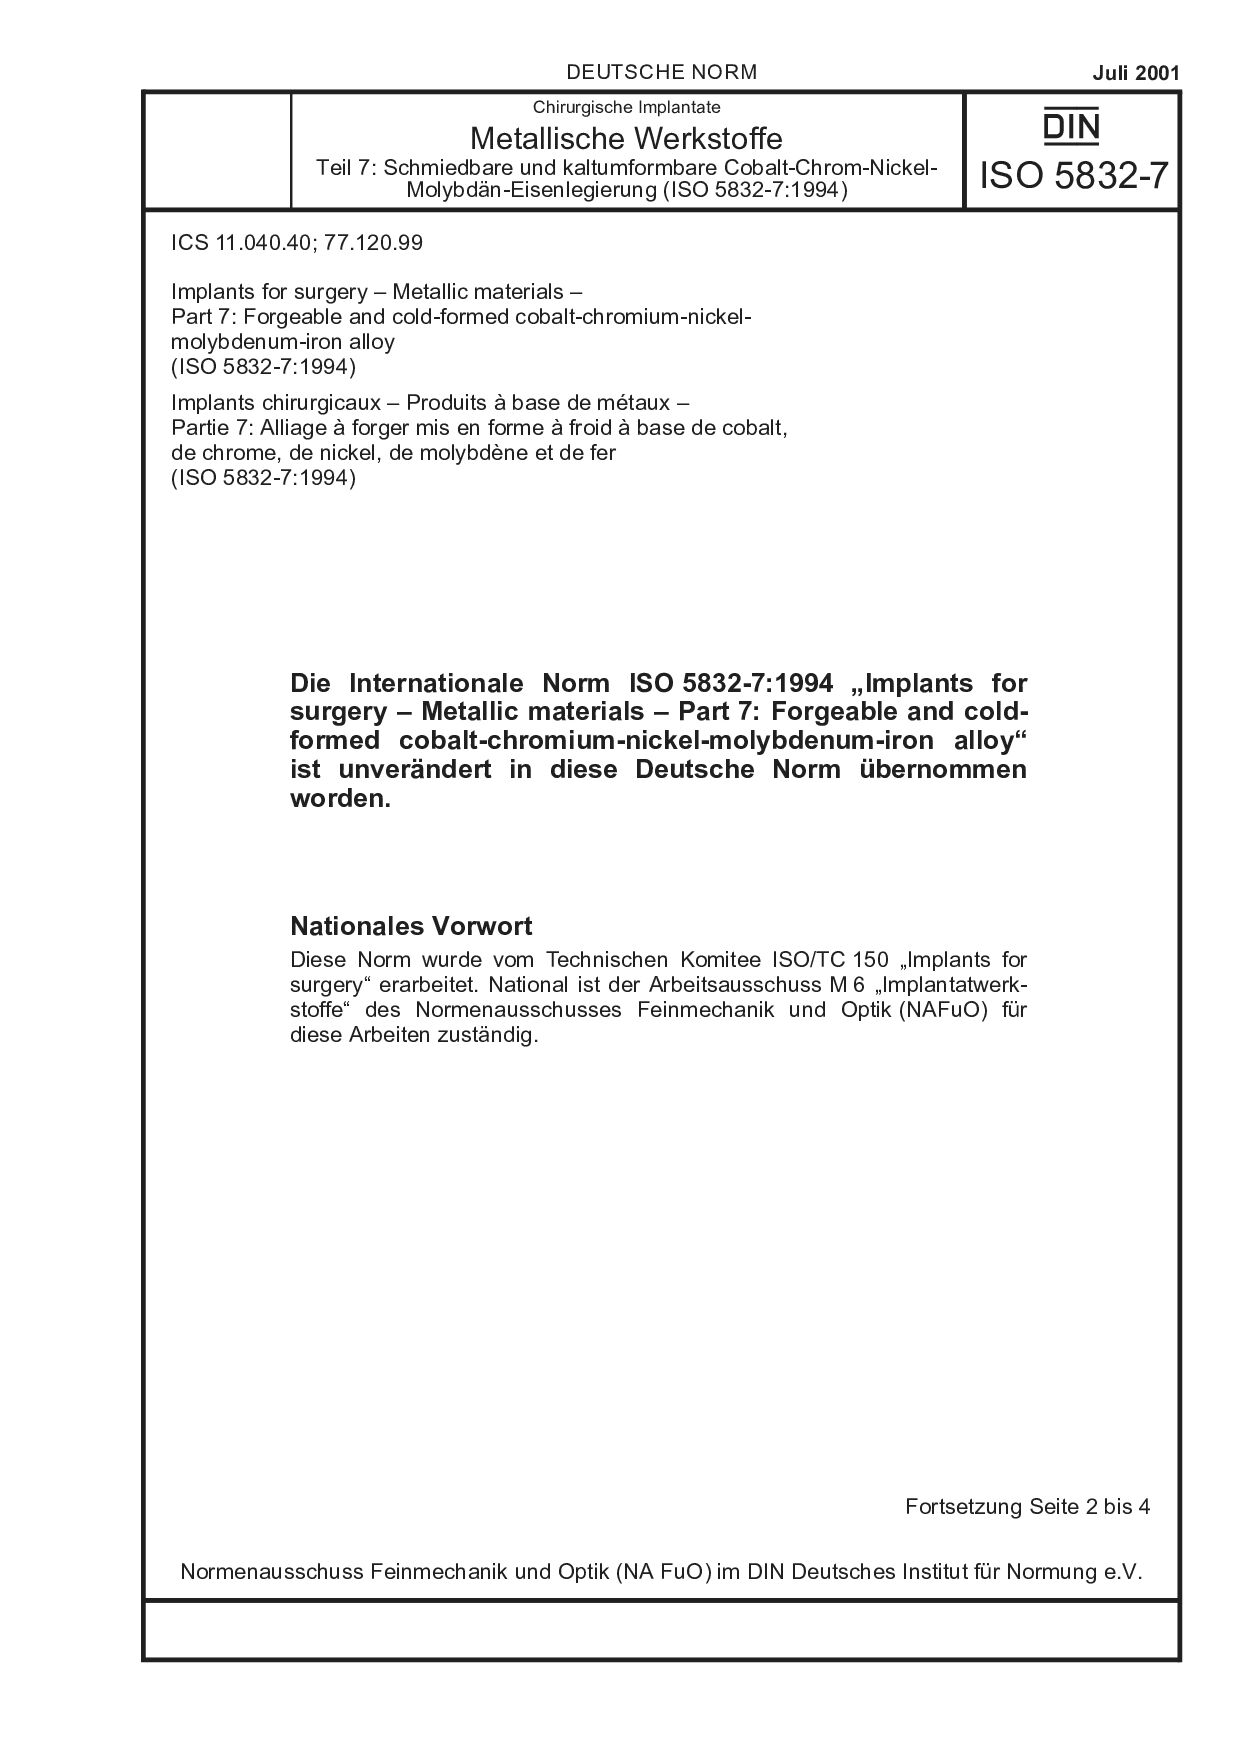 DIN ISO 5832-7:2001封面图